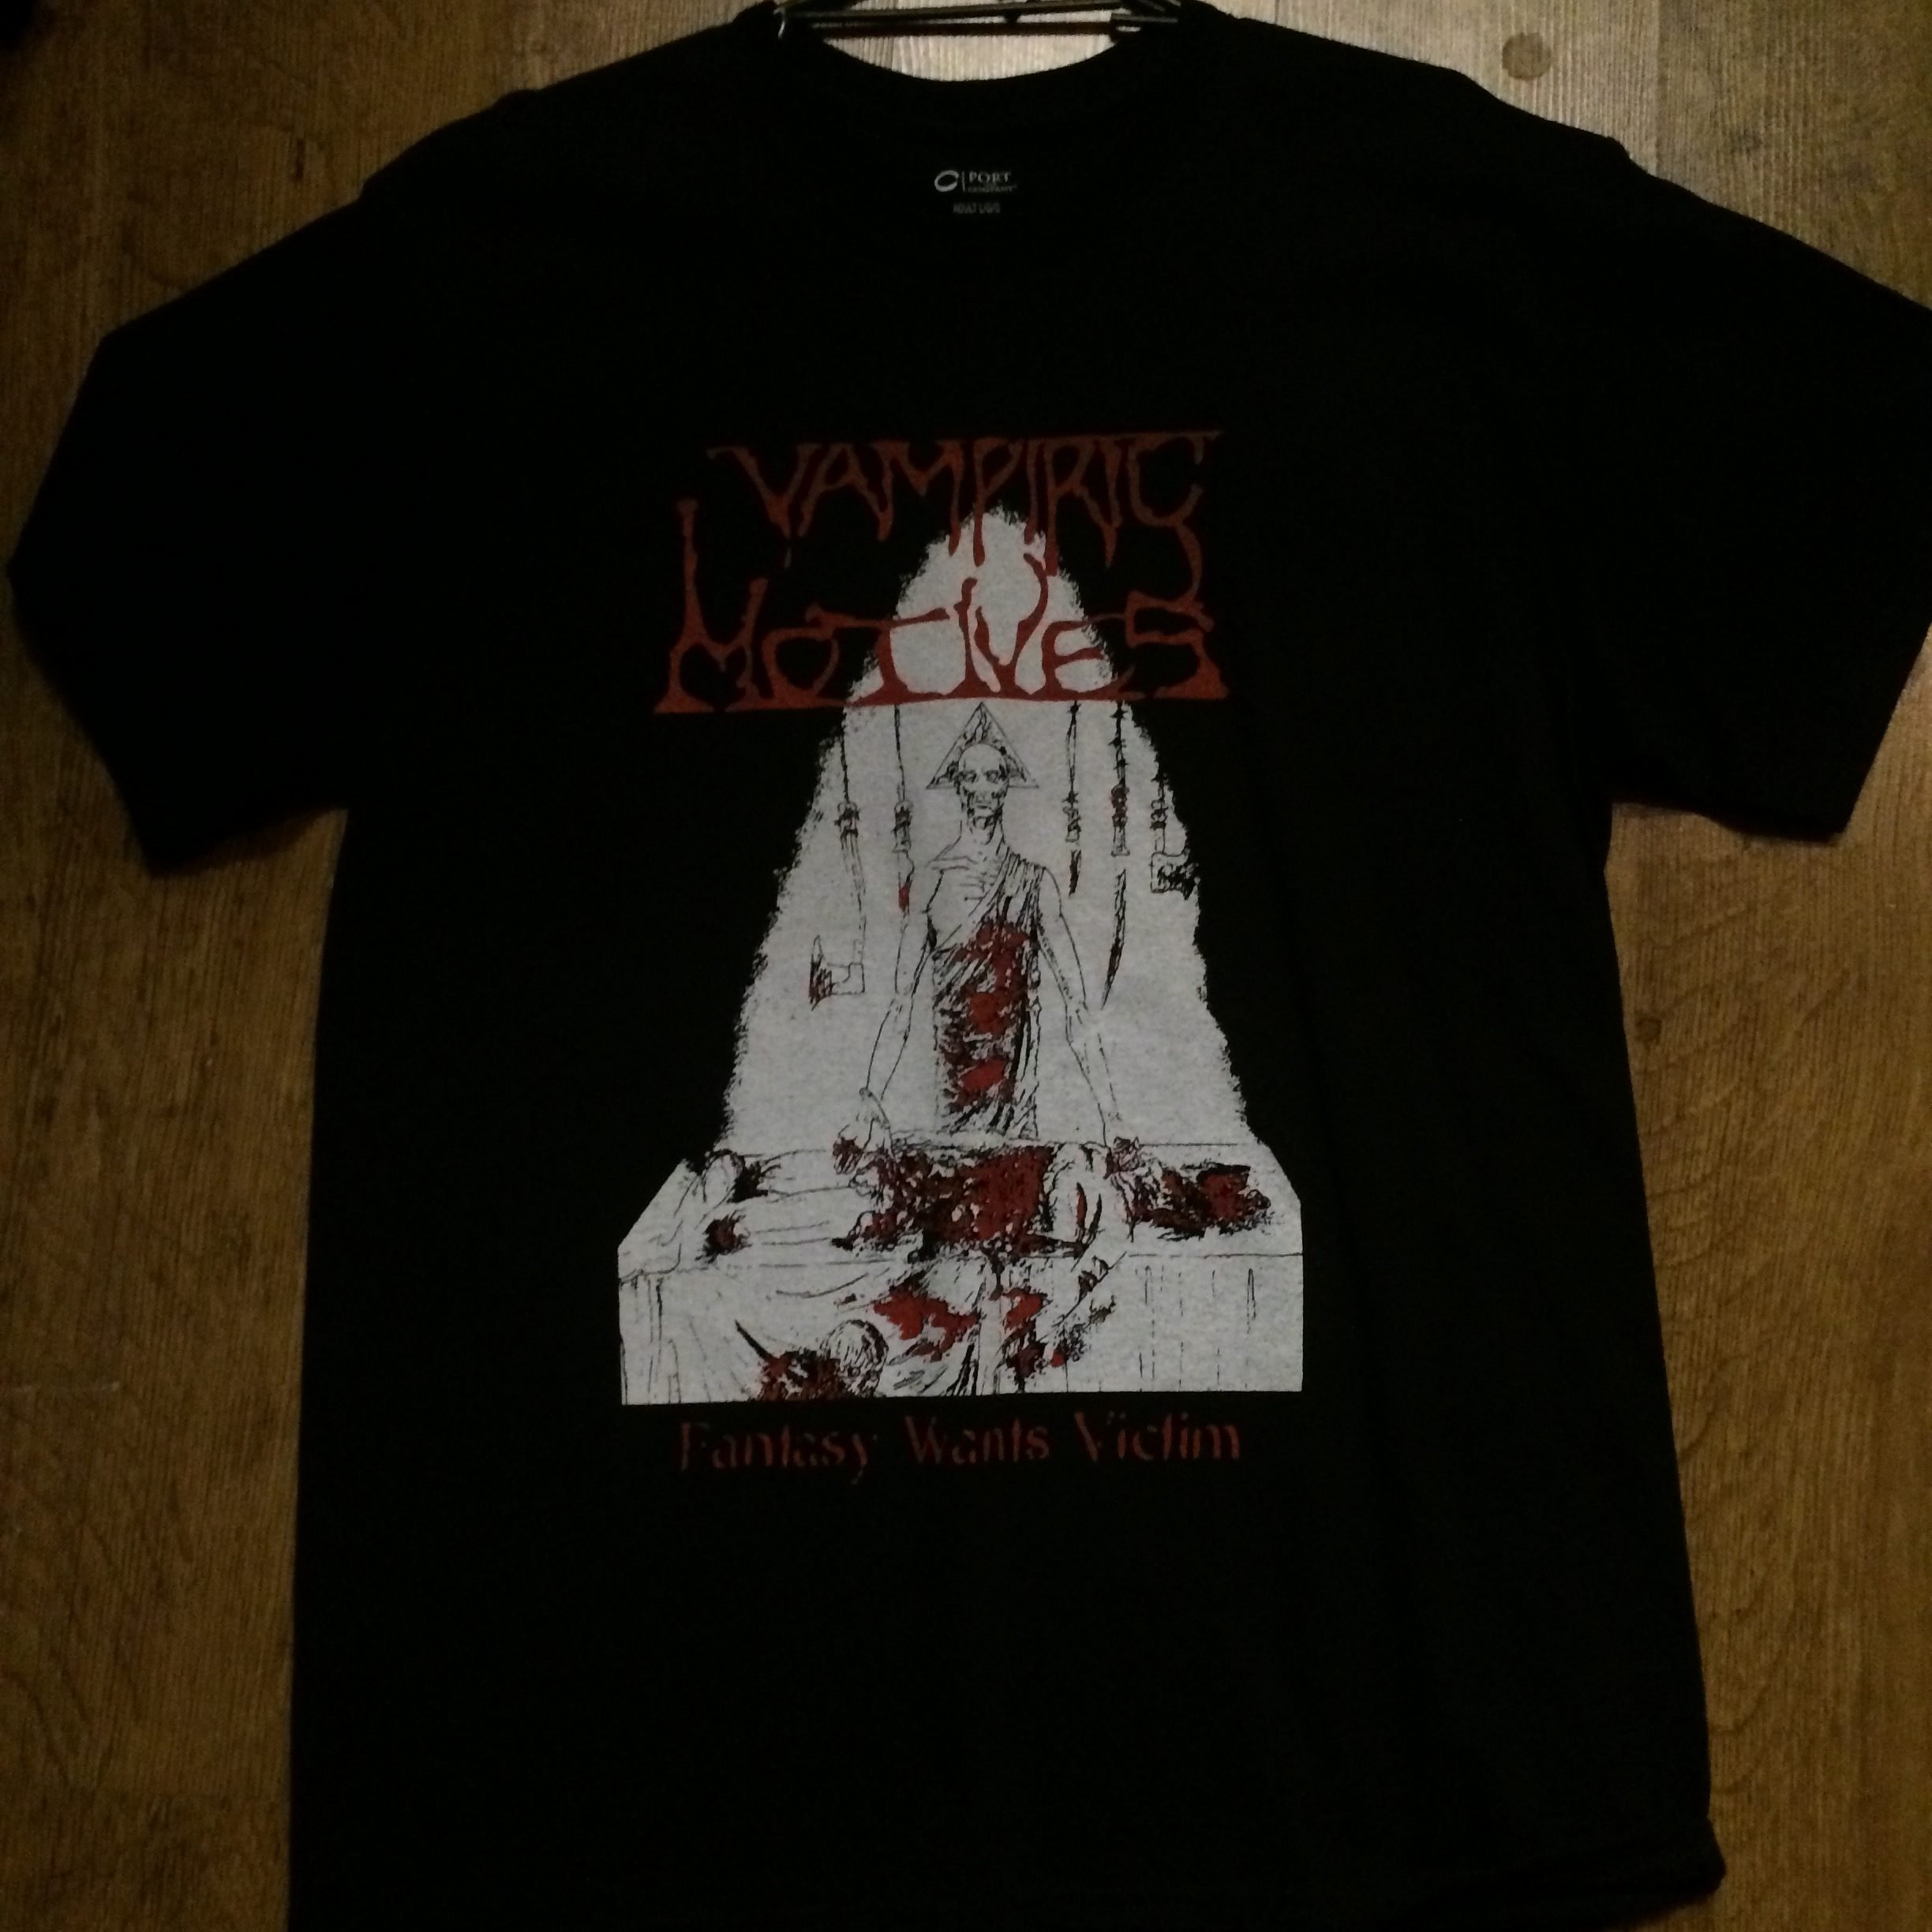 Photo of the Vampiric Motives - "Fantasy Wants Victims" T-shirt (black)